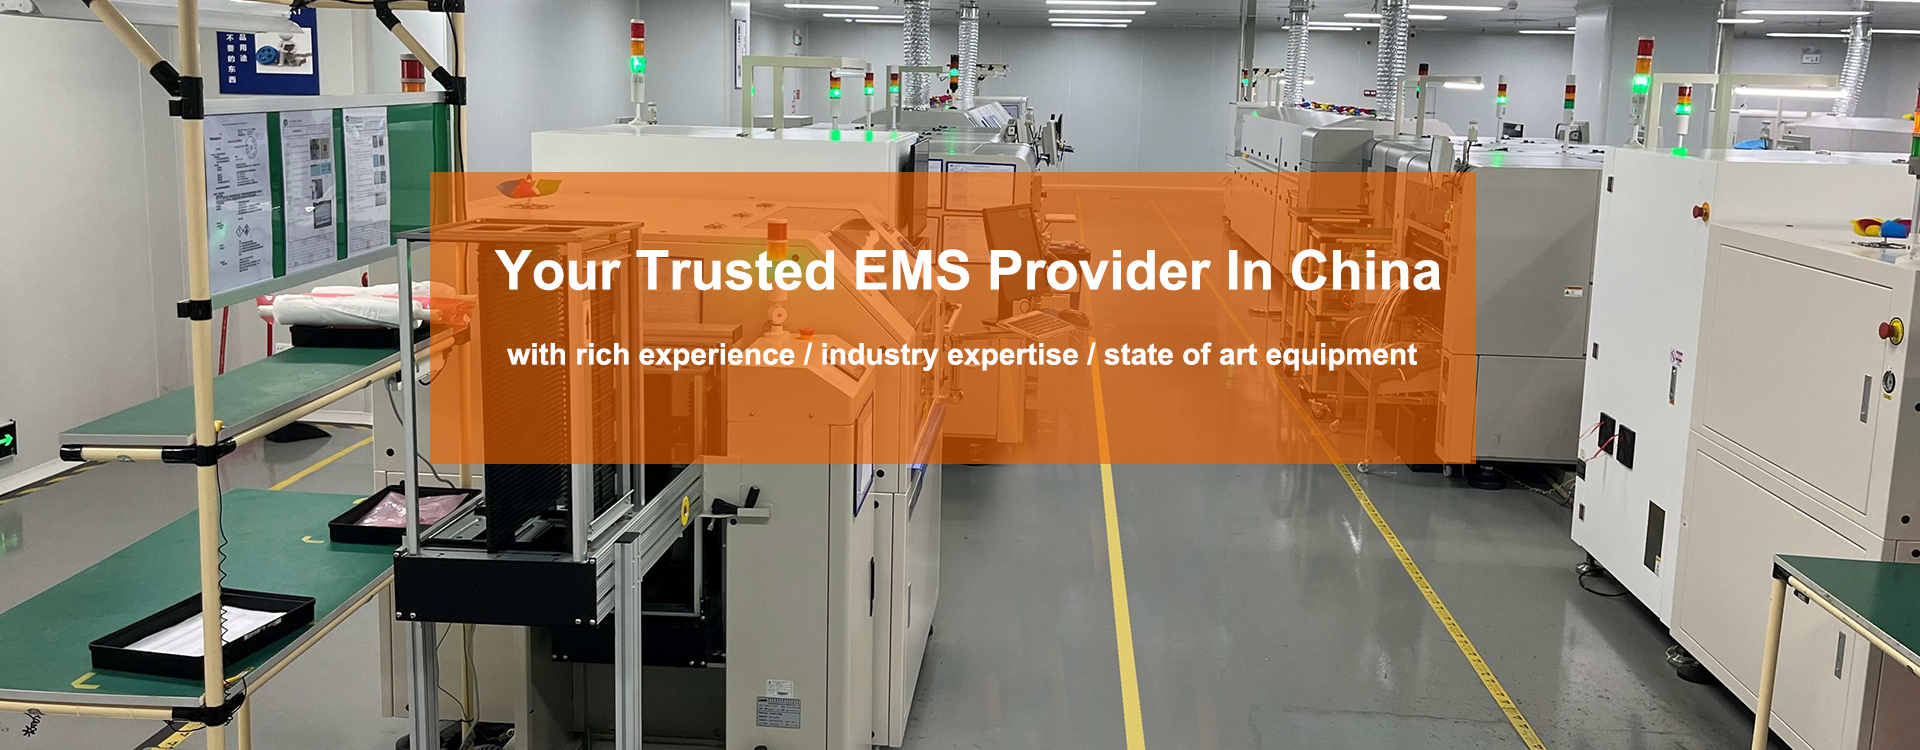 loveliking EMS provider